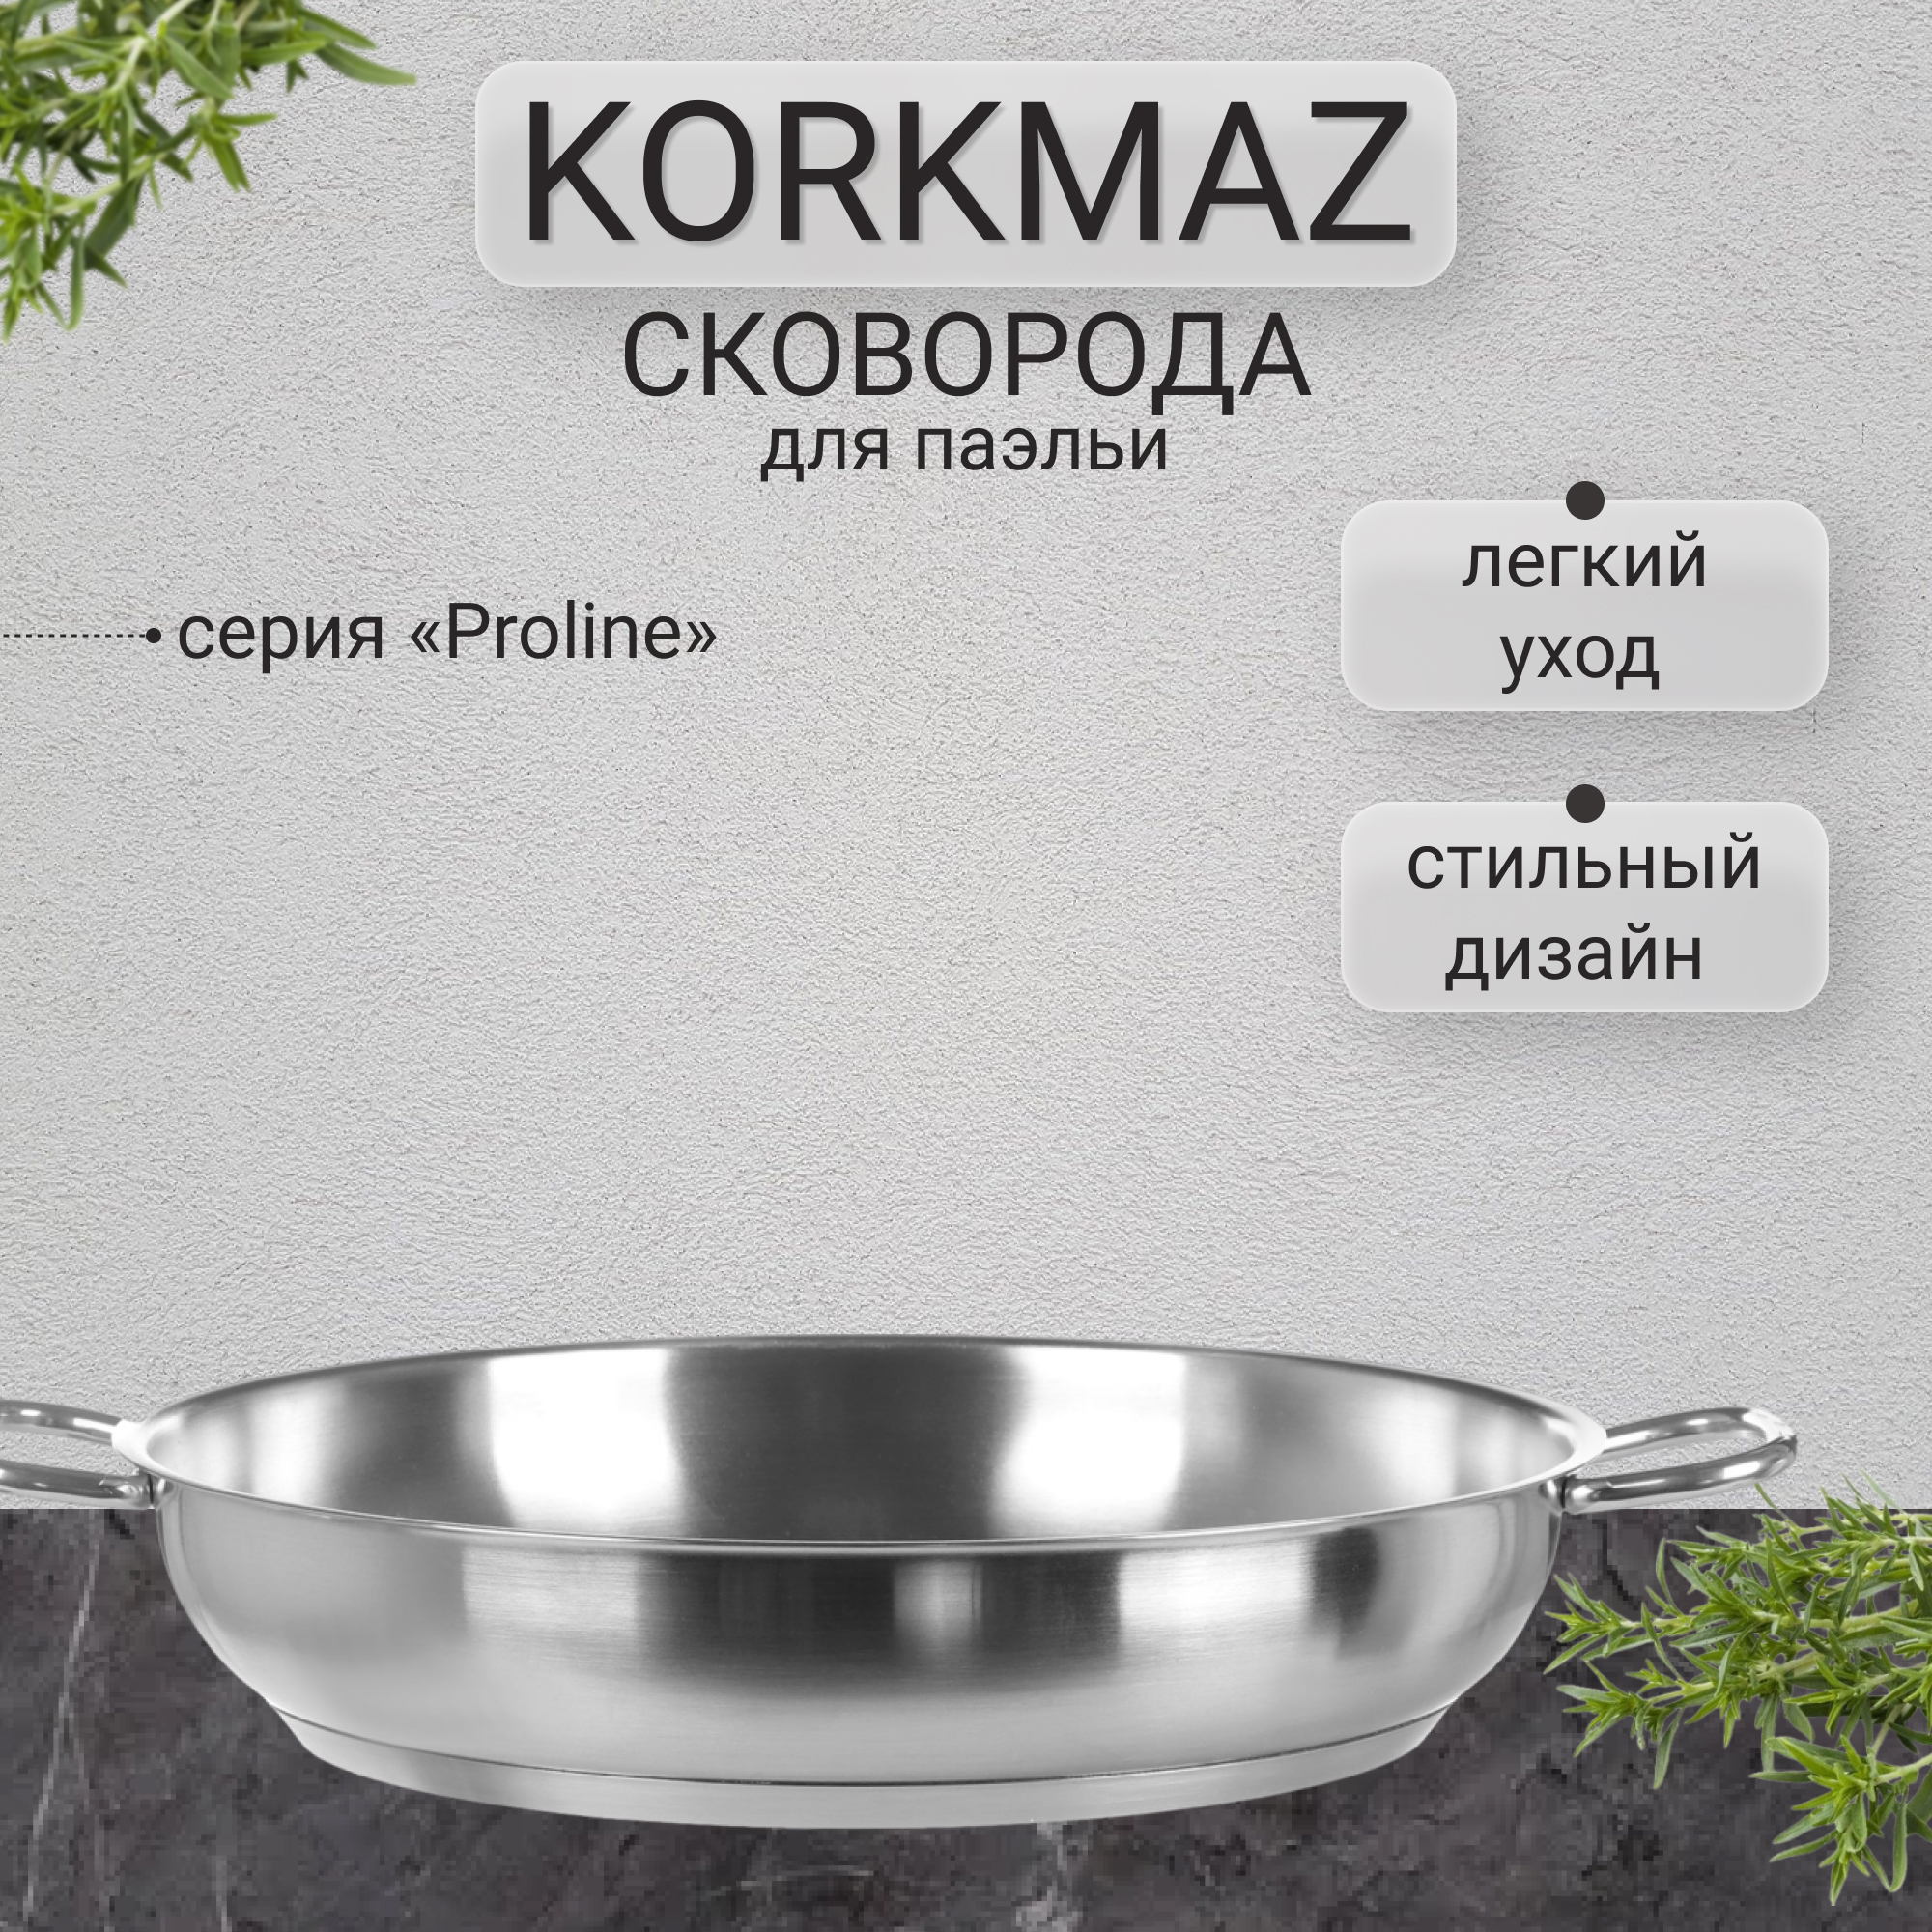 Сковорода для паэльи Korkmaz Proline 28 см, цвет серебристый - фото 2